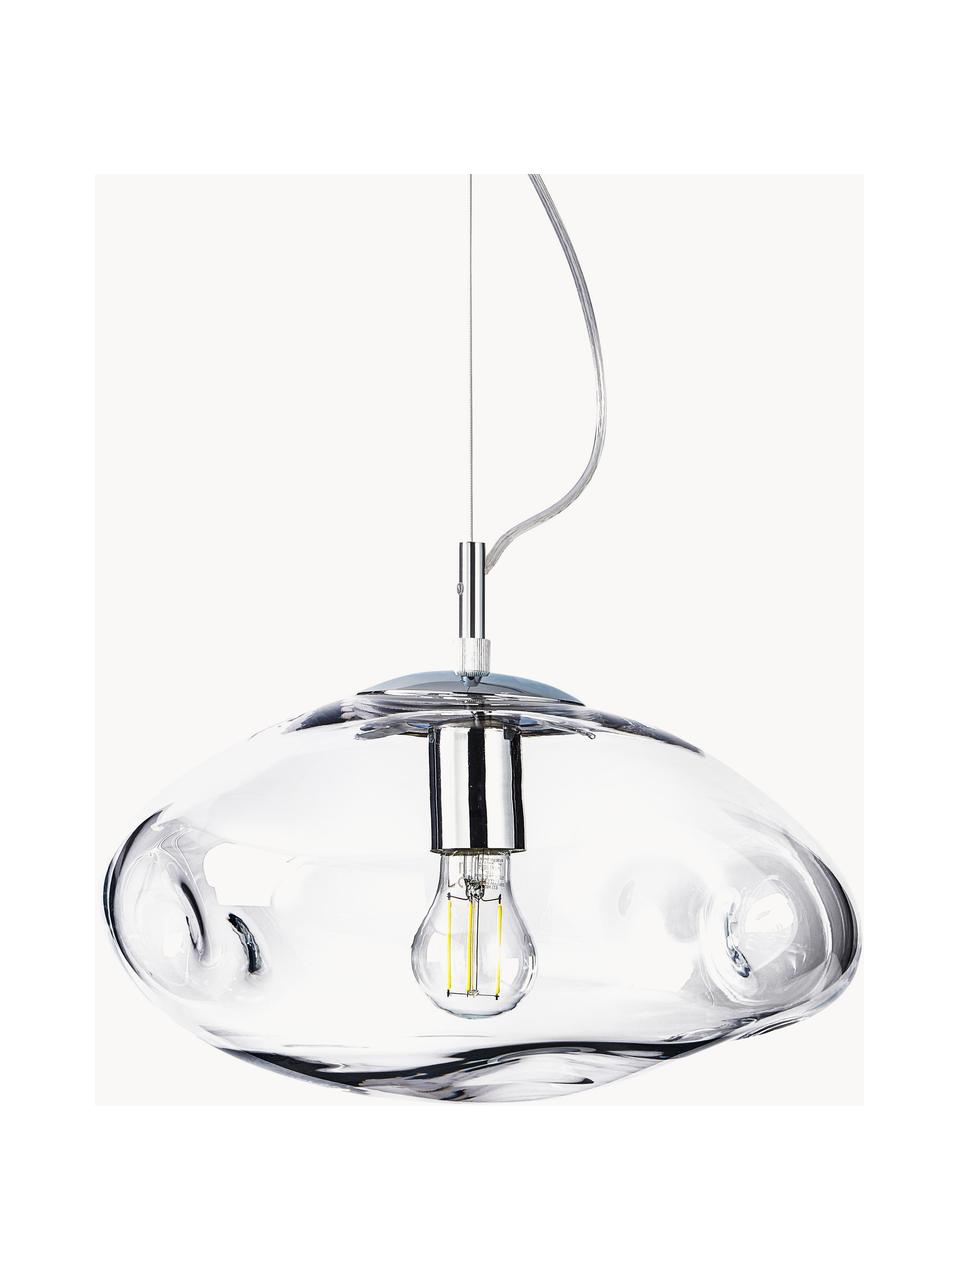 Lámpara de techo Amora, Pantalla: vidrio, Cable: plástico, Transparente, plateado, Ø 35 x Al 20 cm